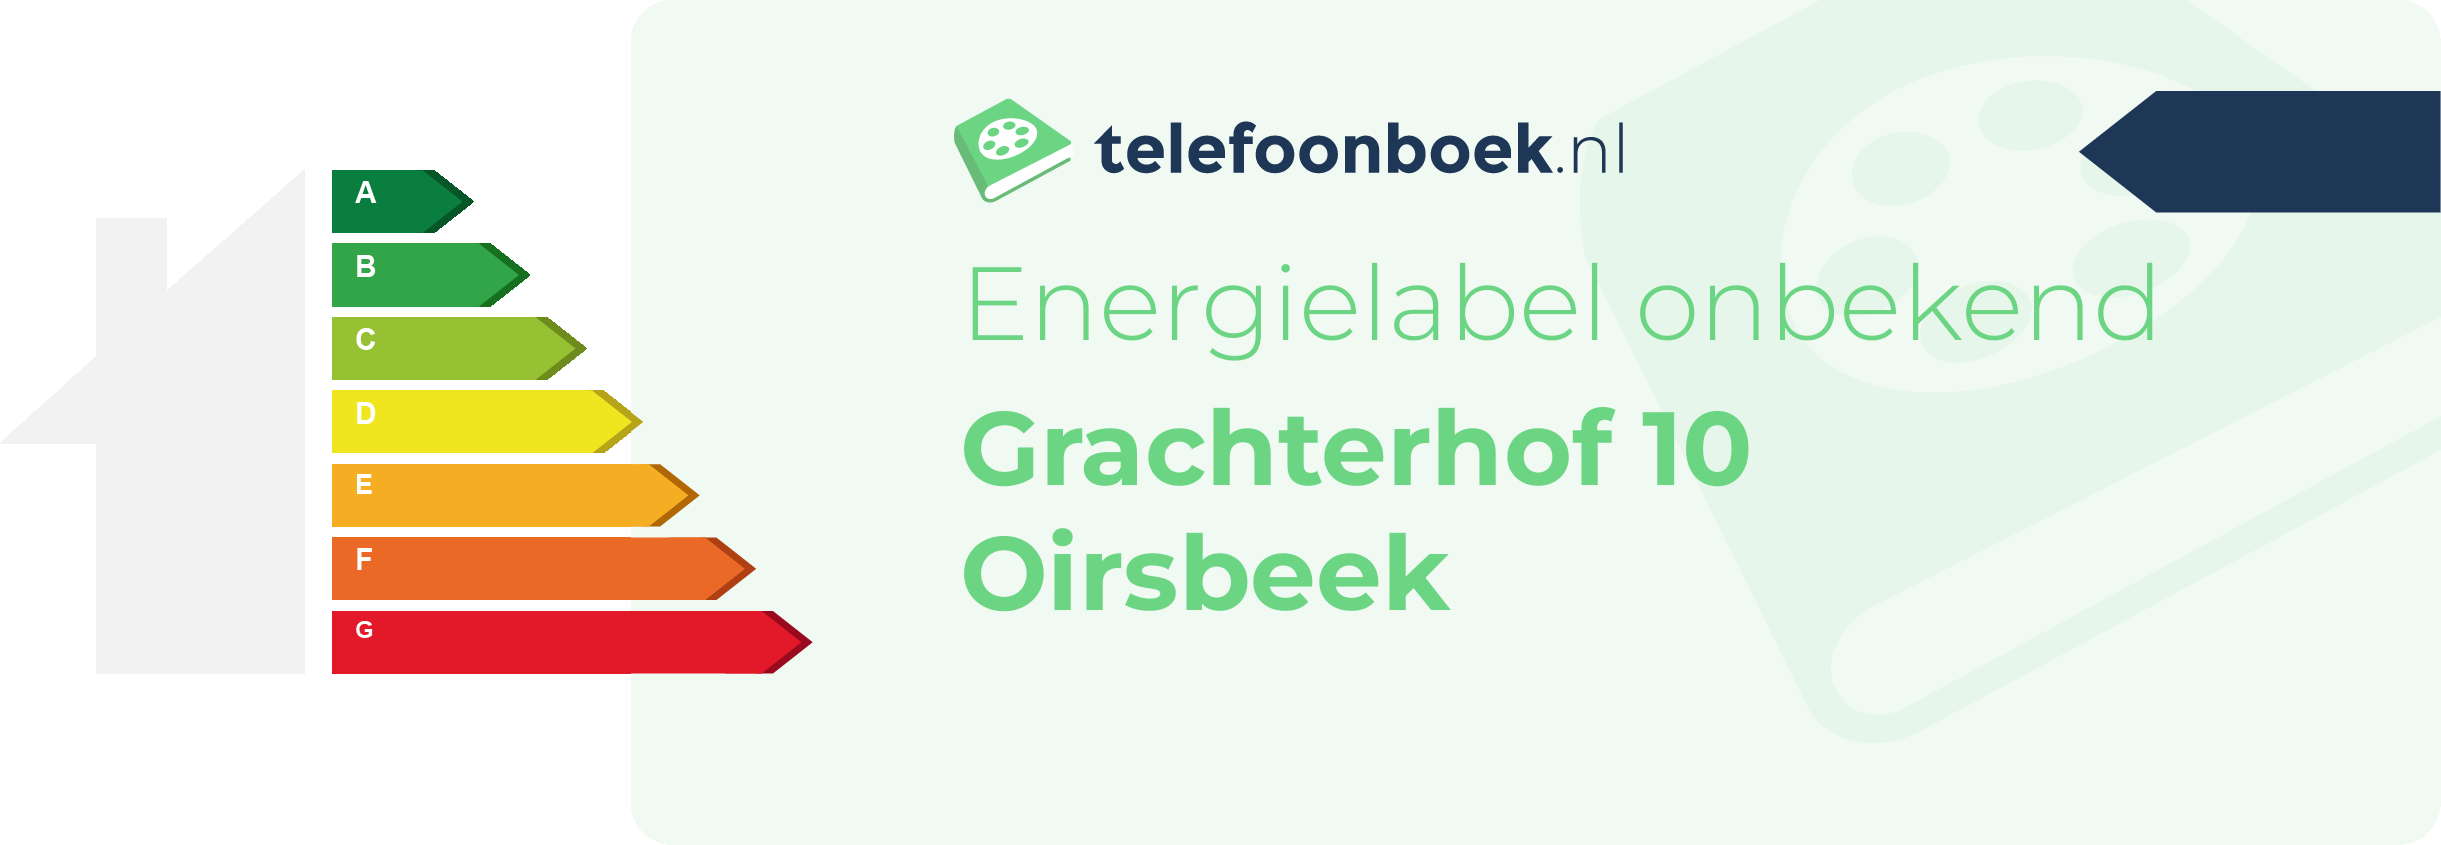 Energielabel Grachterhof 10 Oirsbeek